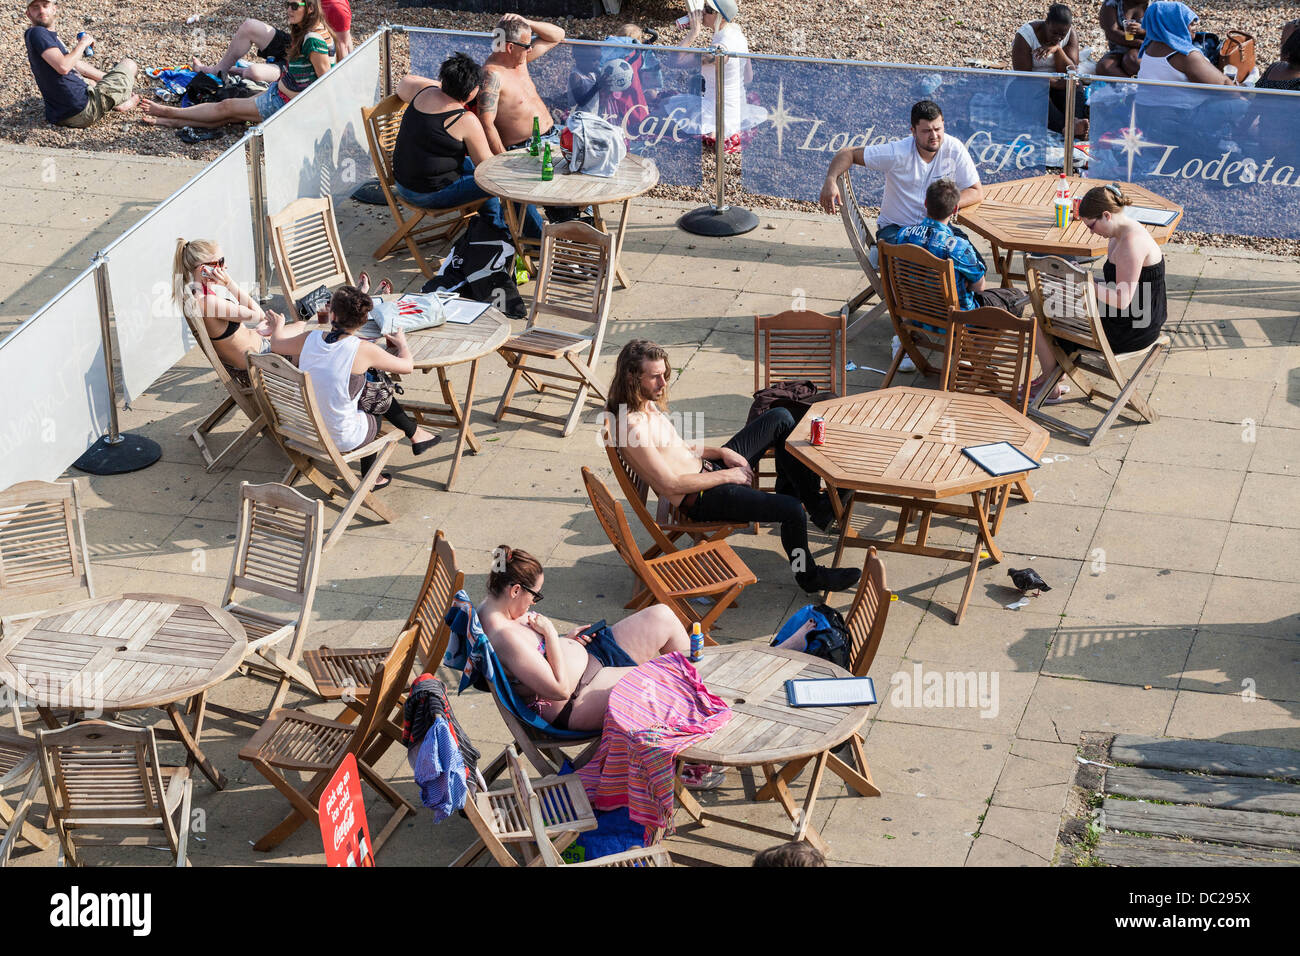 Clients assis sur une terrasse ensoleillée, Brighton, Sussex, Angleterre, Royaume-Uni Banque D'Images